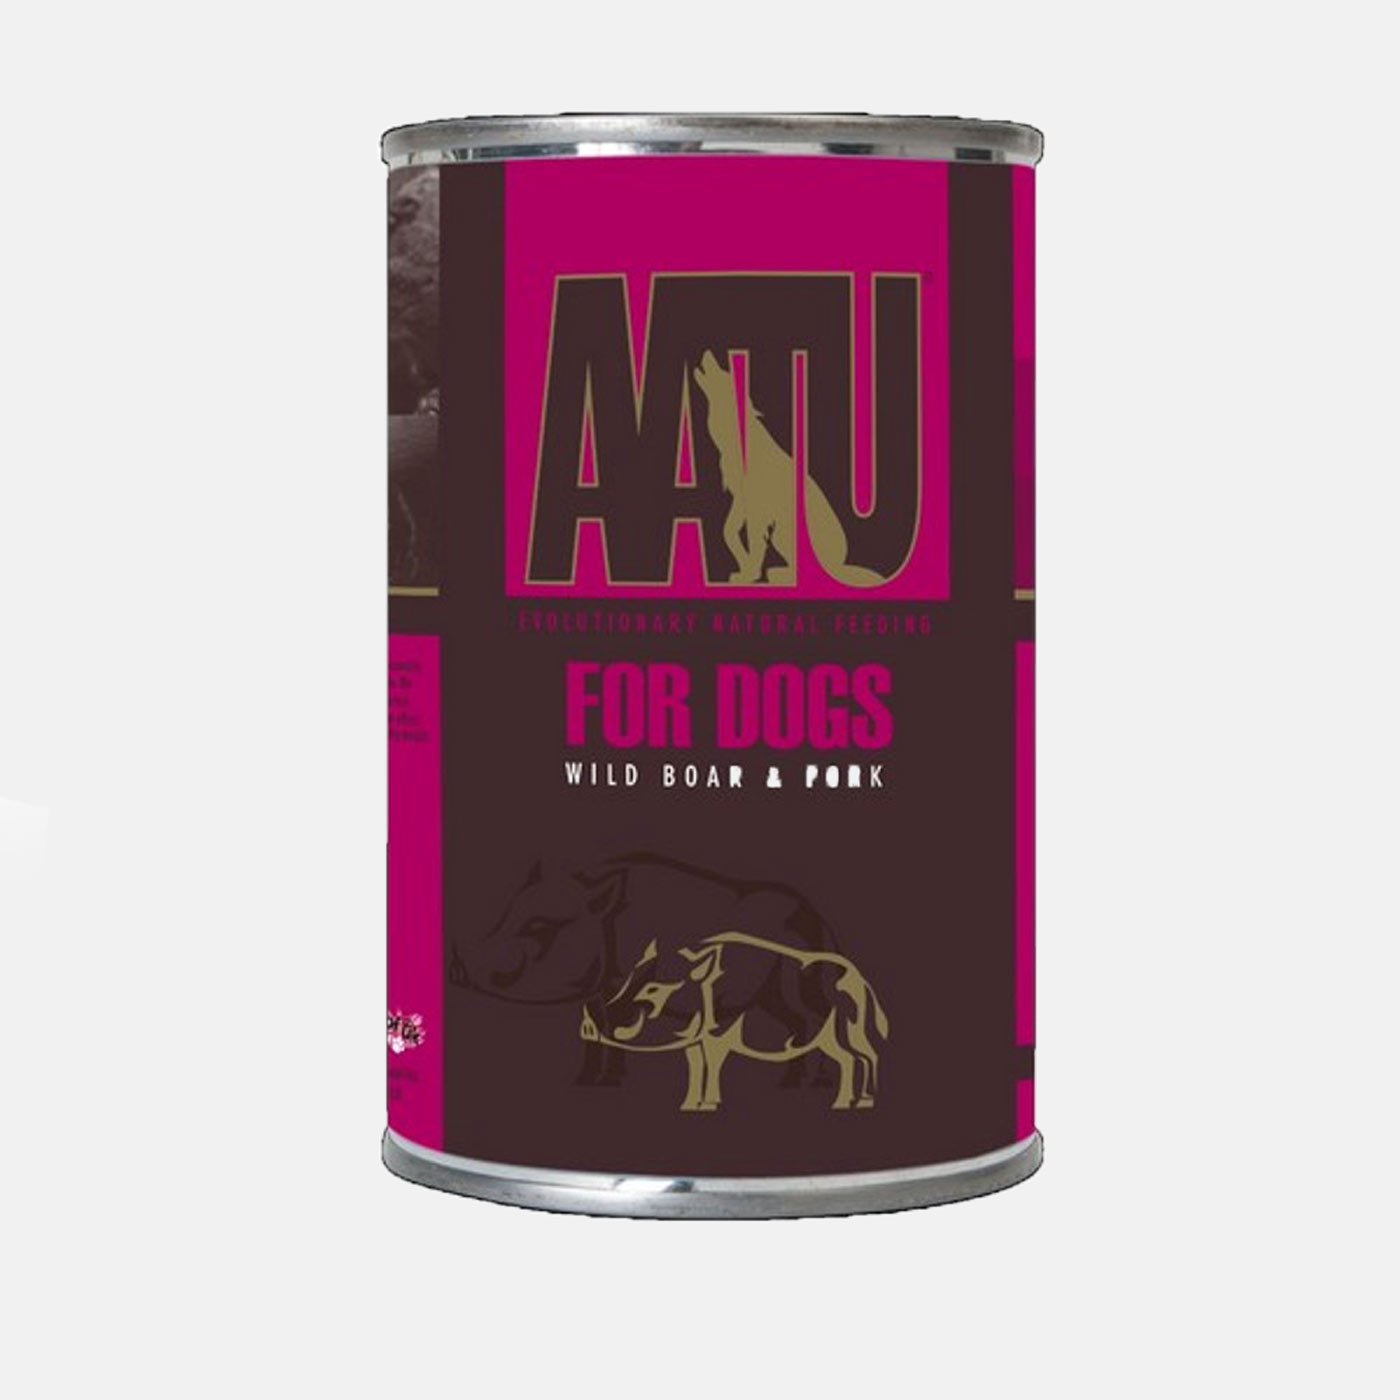 AATU Adult Dog Food with Wild Boar & Pork 400g